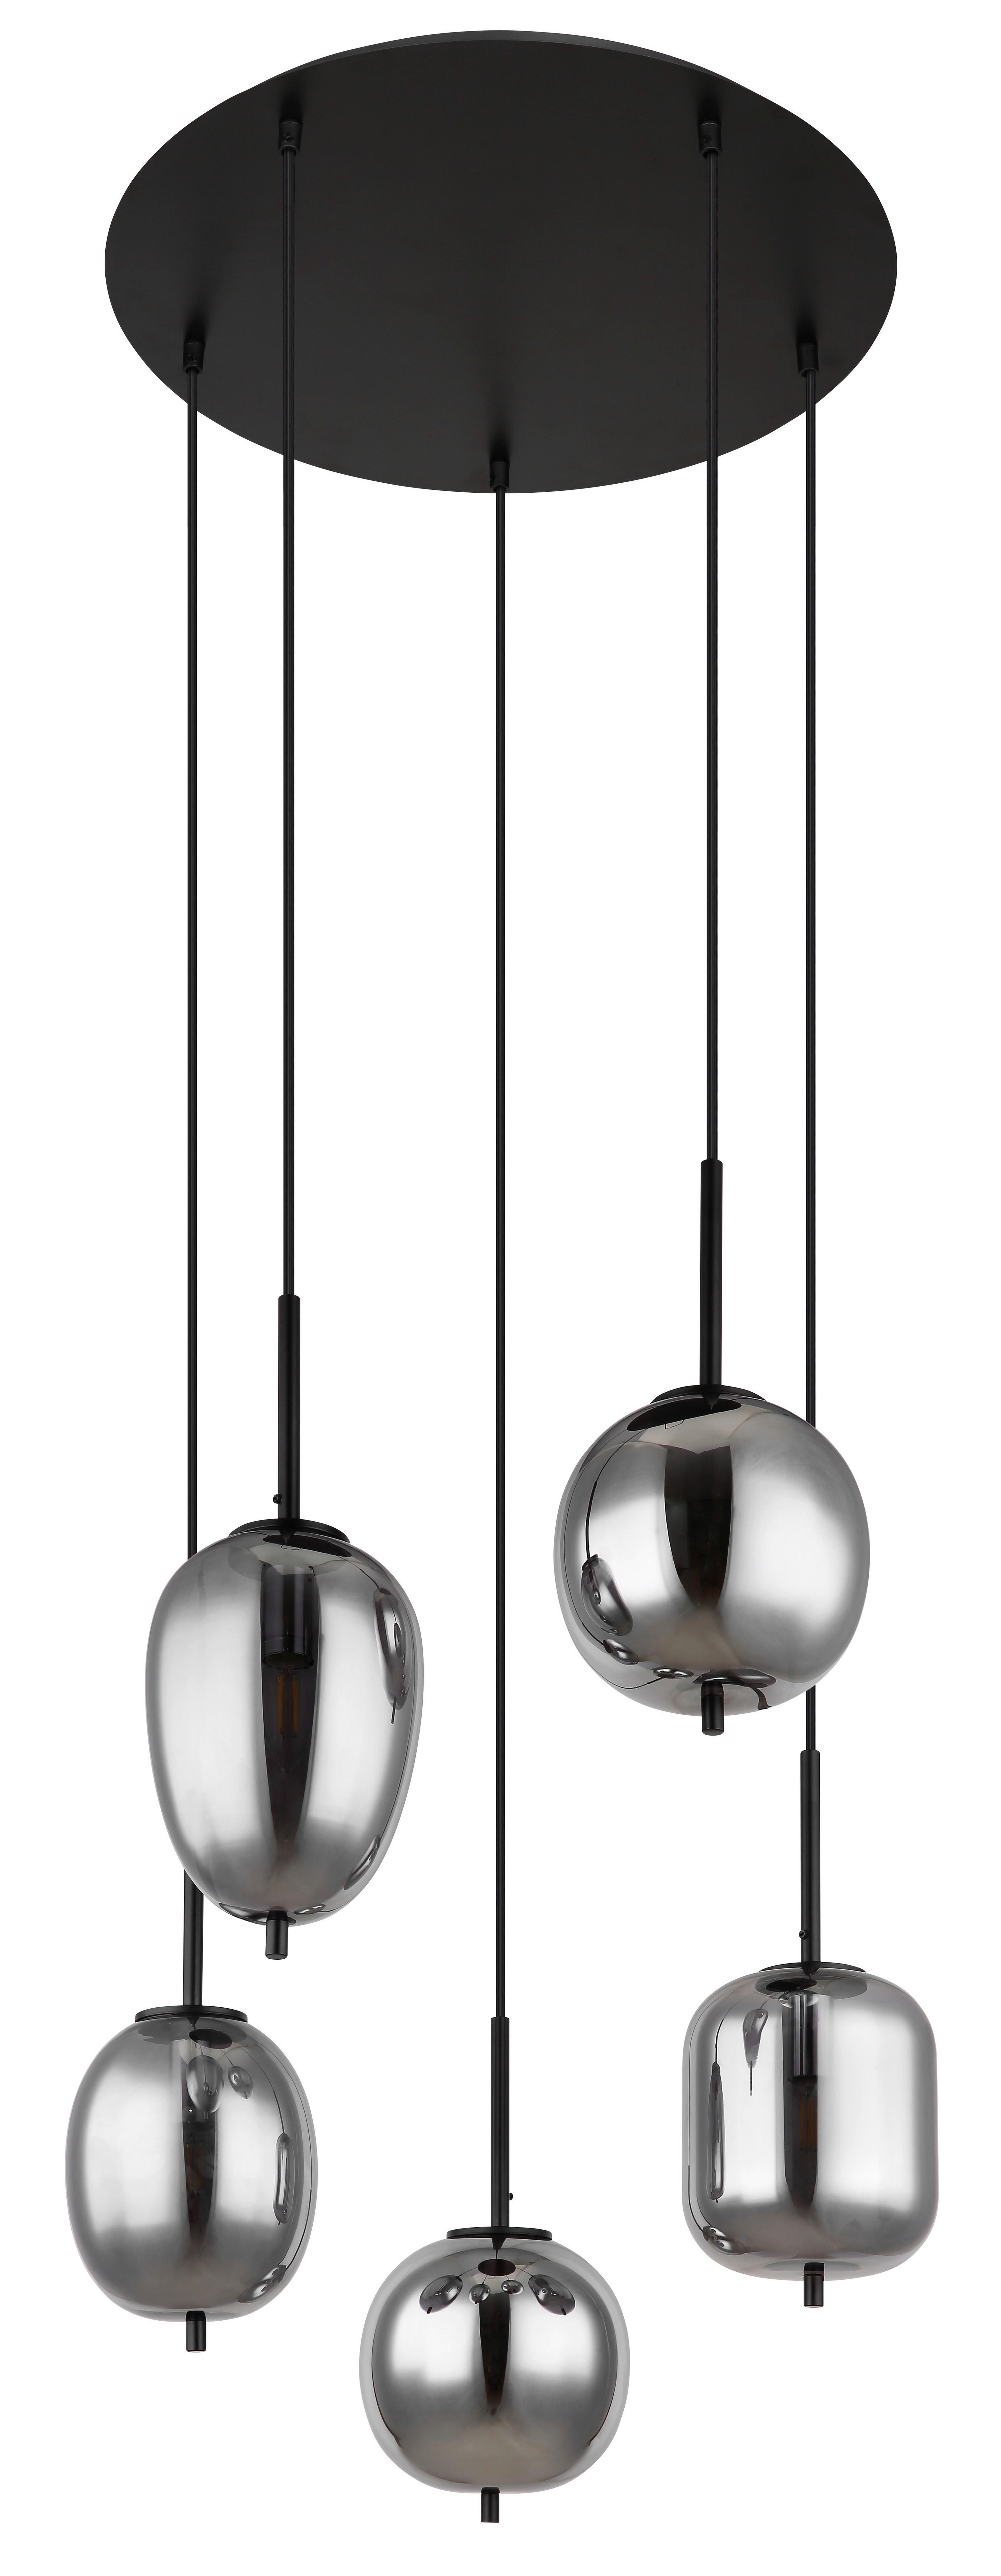 HÄNGELEUCHTE 57,5/150 cm   - Schwarz, Design, Glas/Metall (57,5/150cm) - Globo